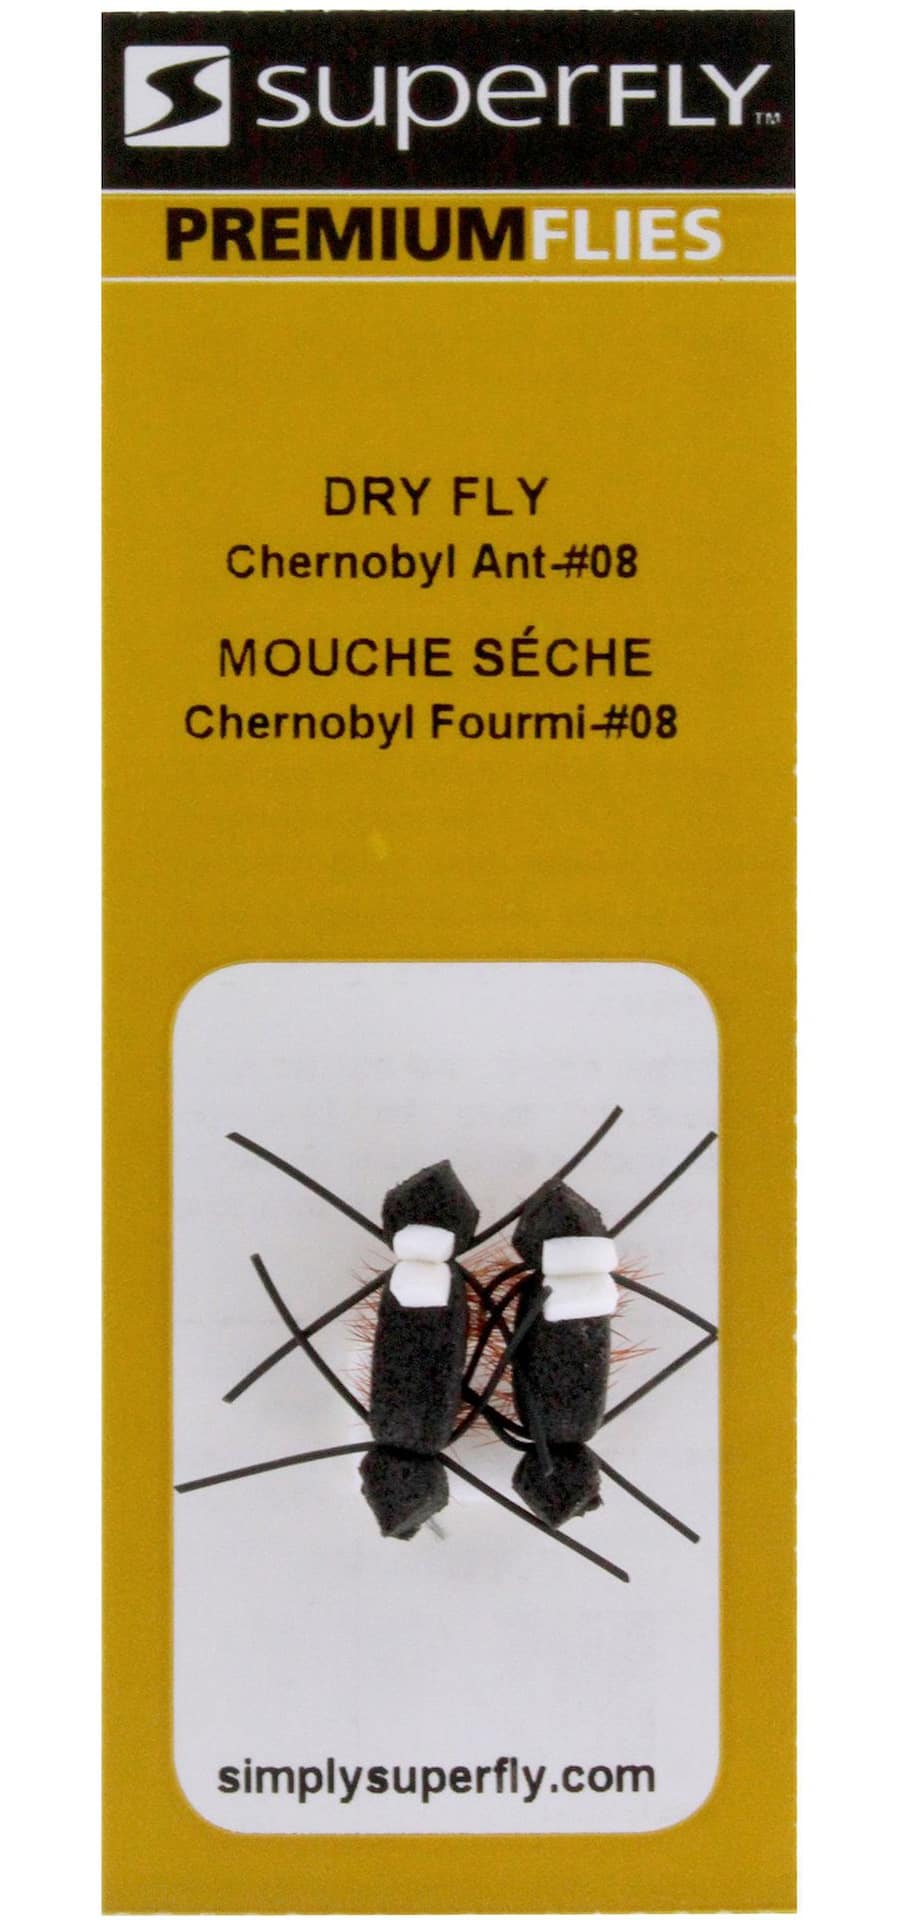 SuperFly Dry Fly, Chernobyl Ant, #08